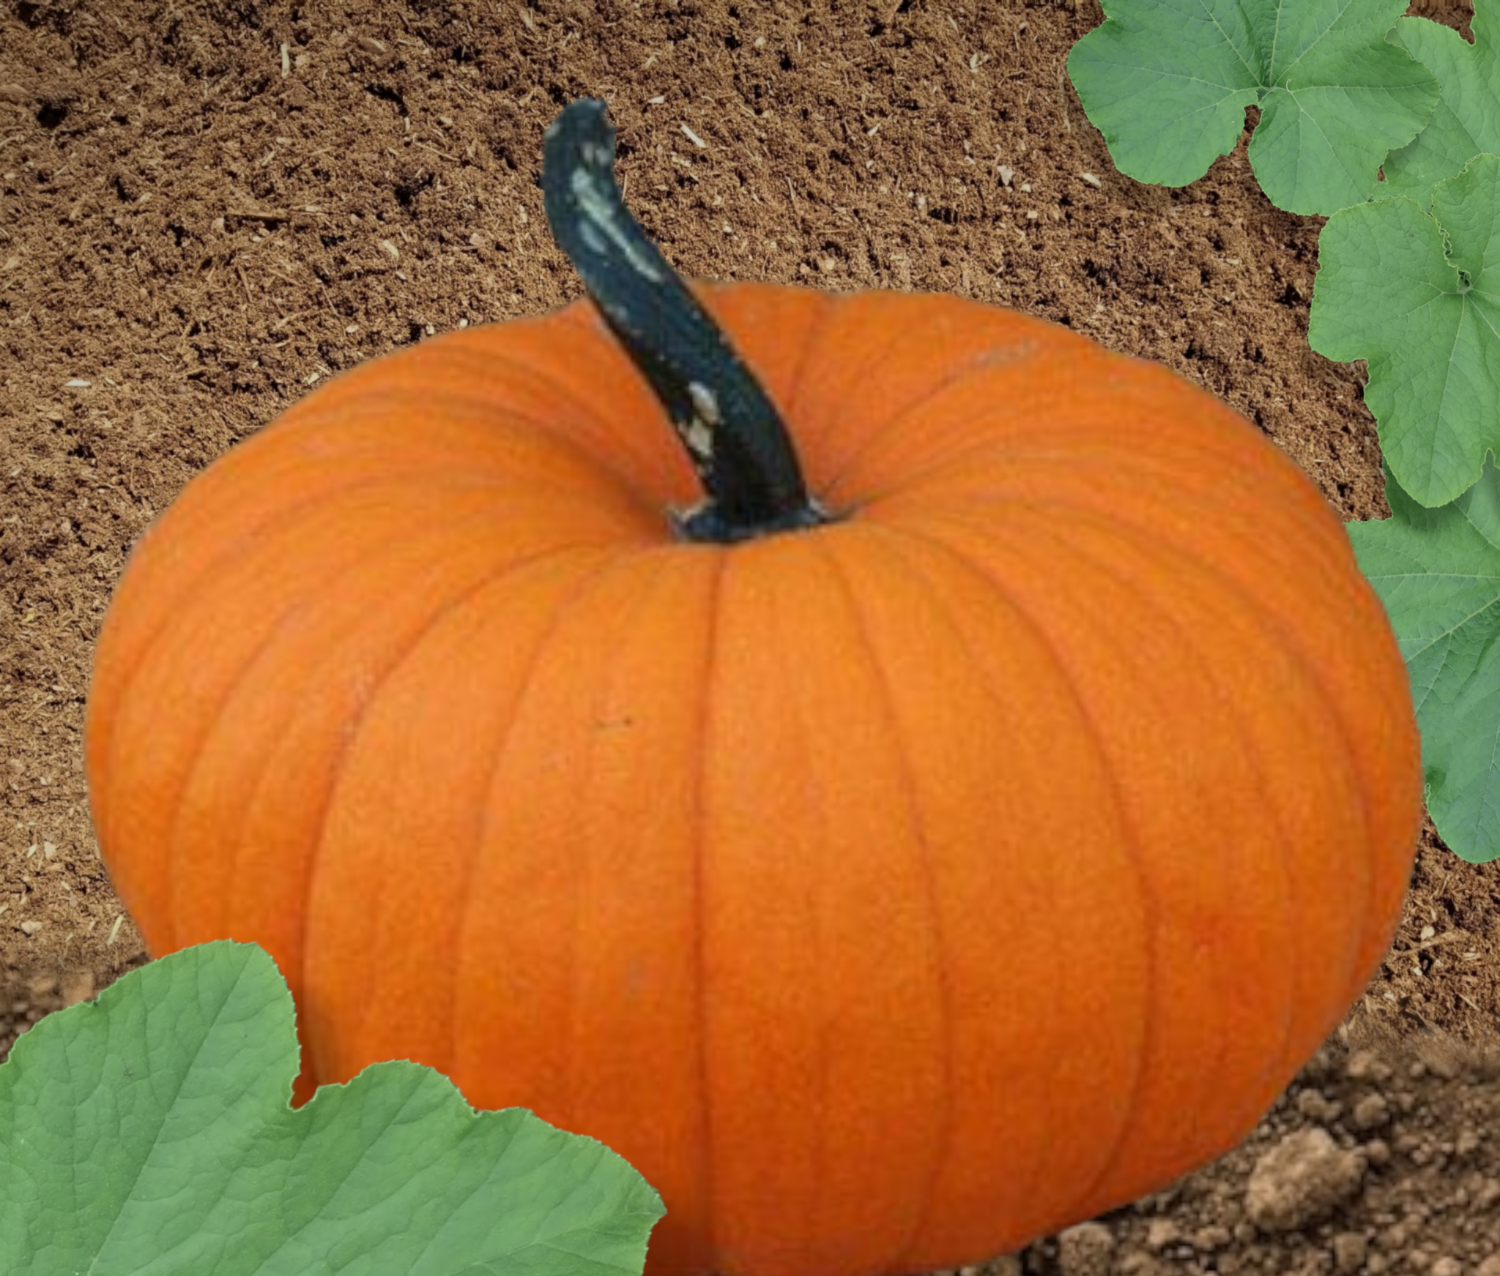 Flatso Hybrid Pumpkin Seeds